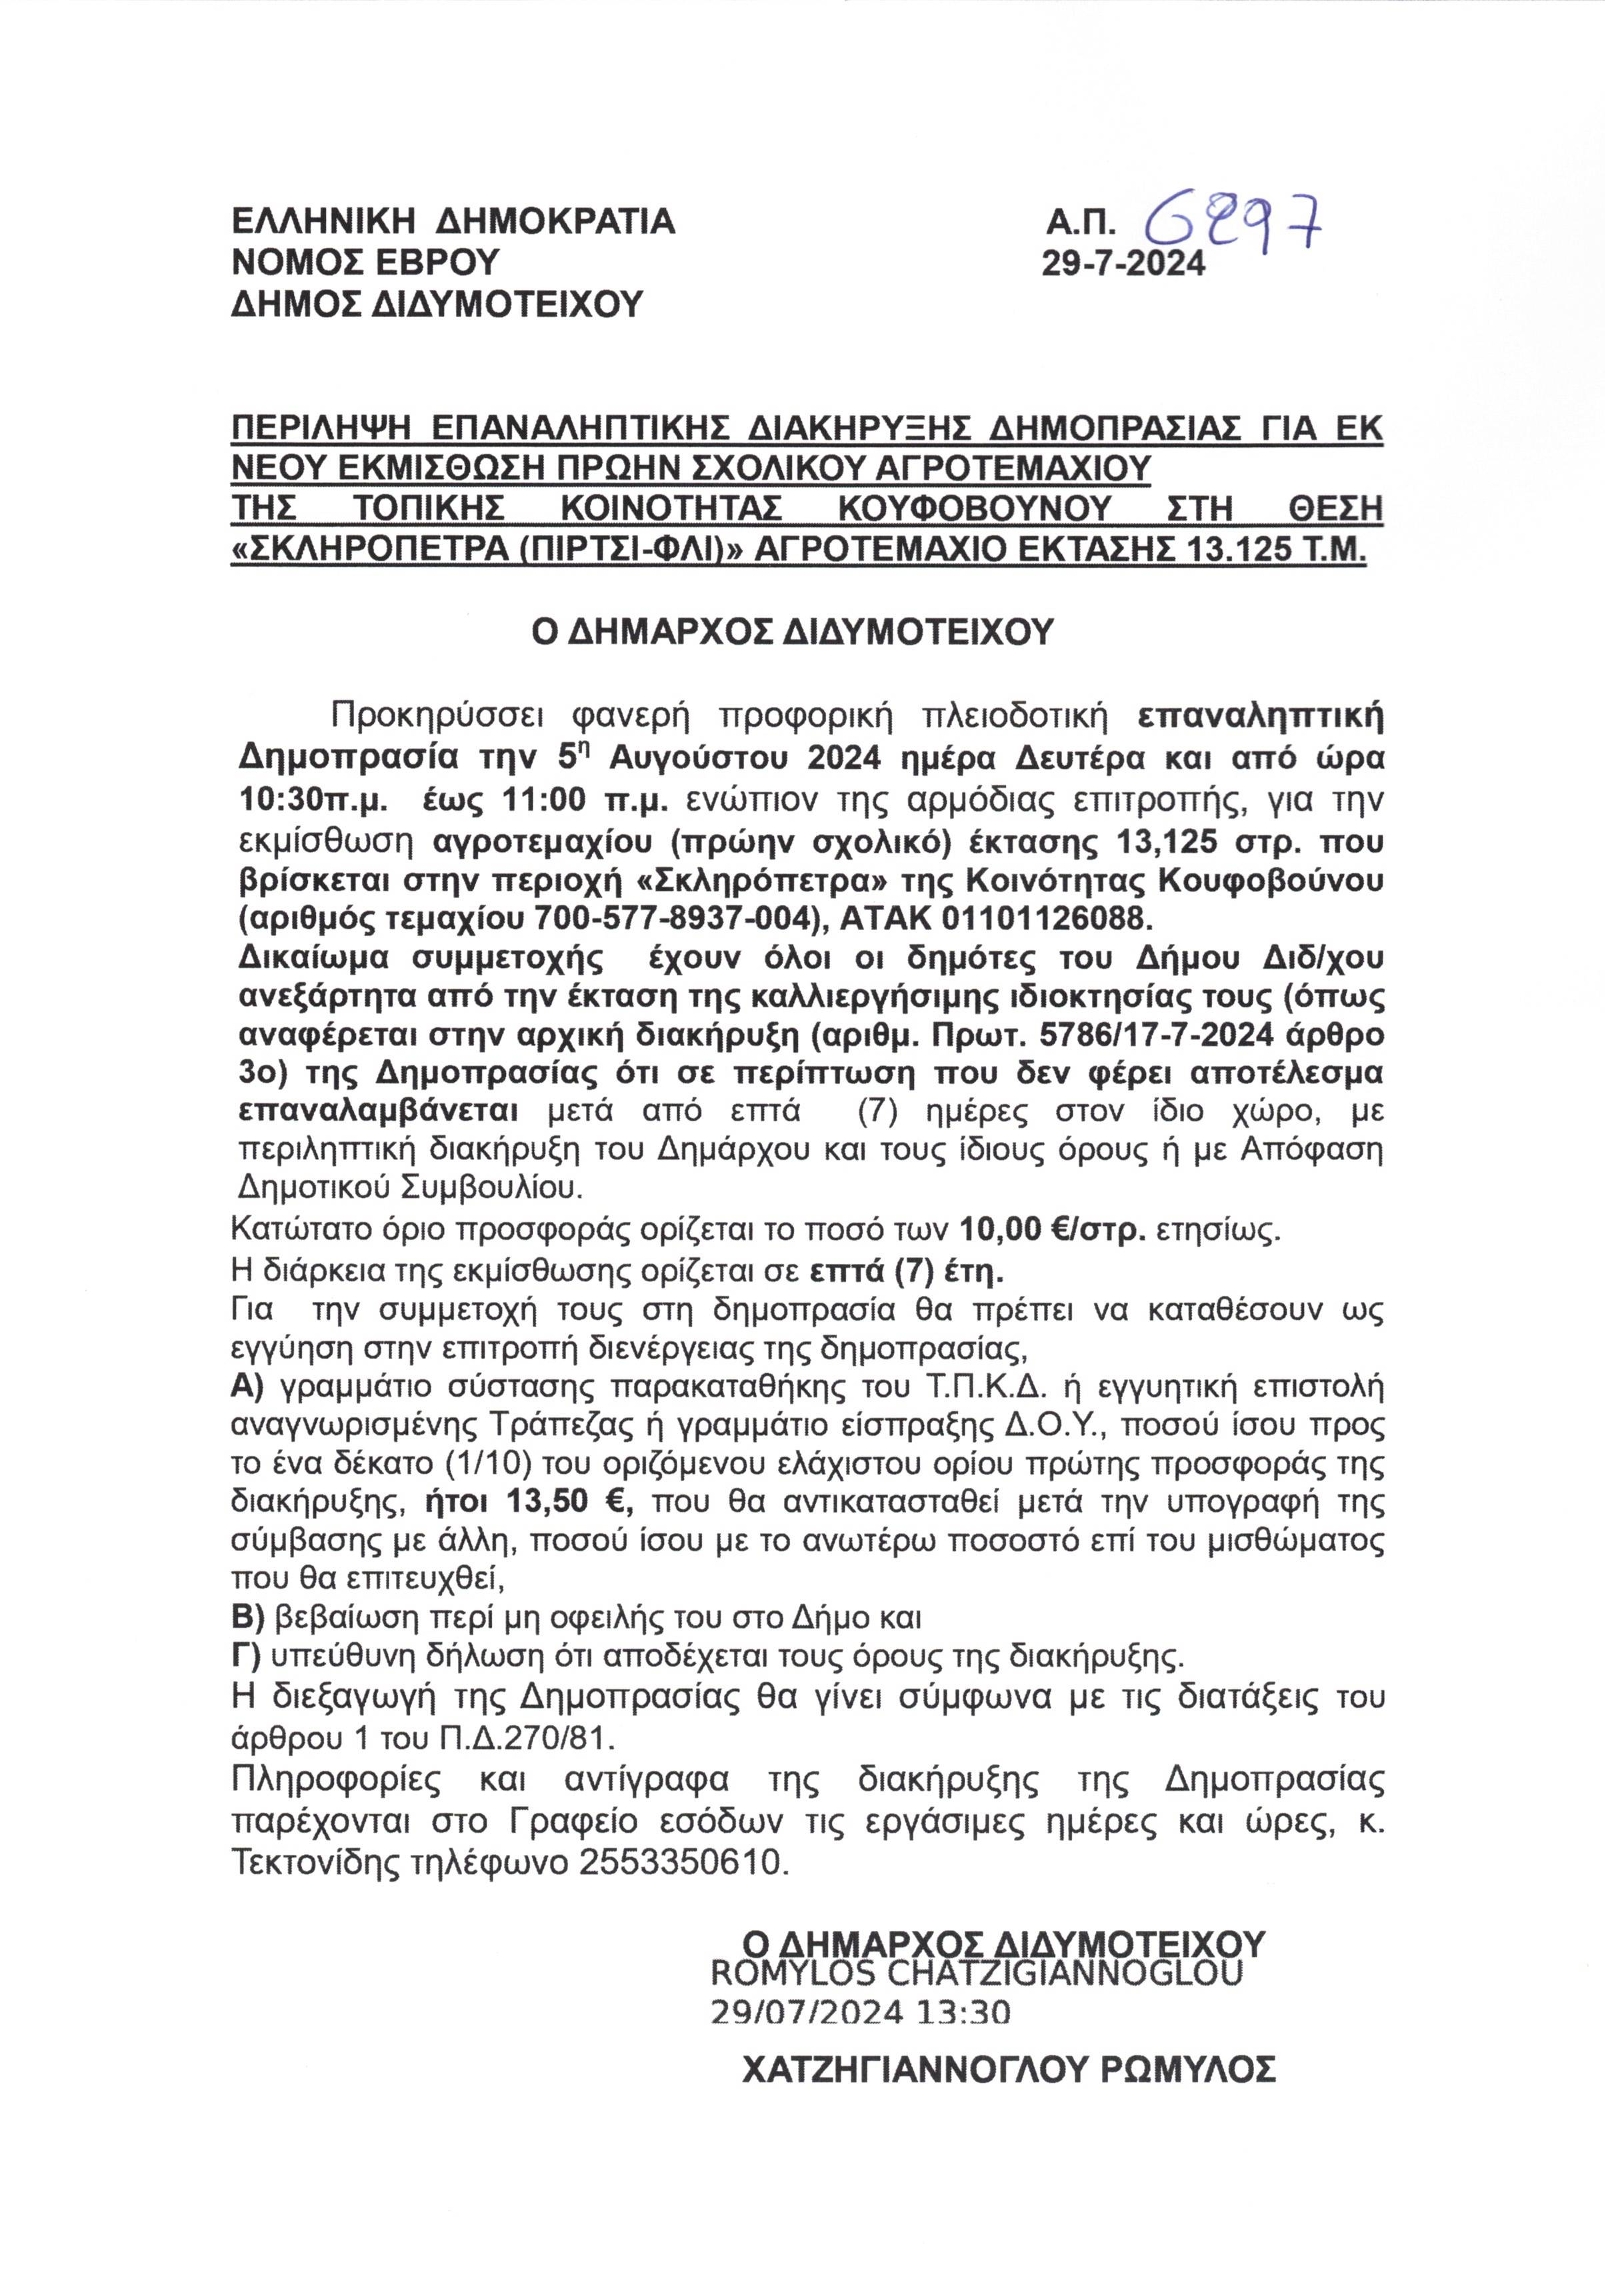 Επαναληπτική διακήρυξη δημοπρασίας αγροτεμαχίου τοπικής κοινότητας Κουφοβούνου